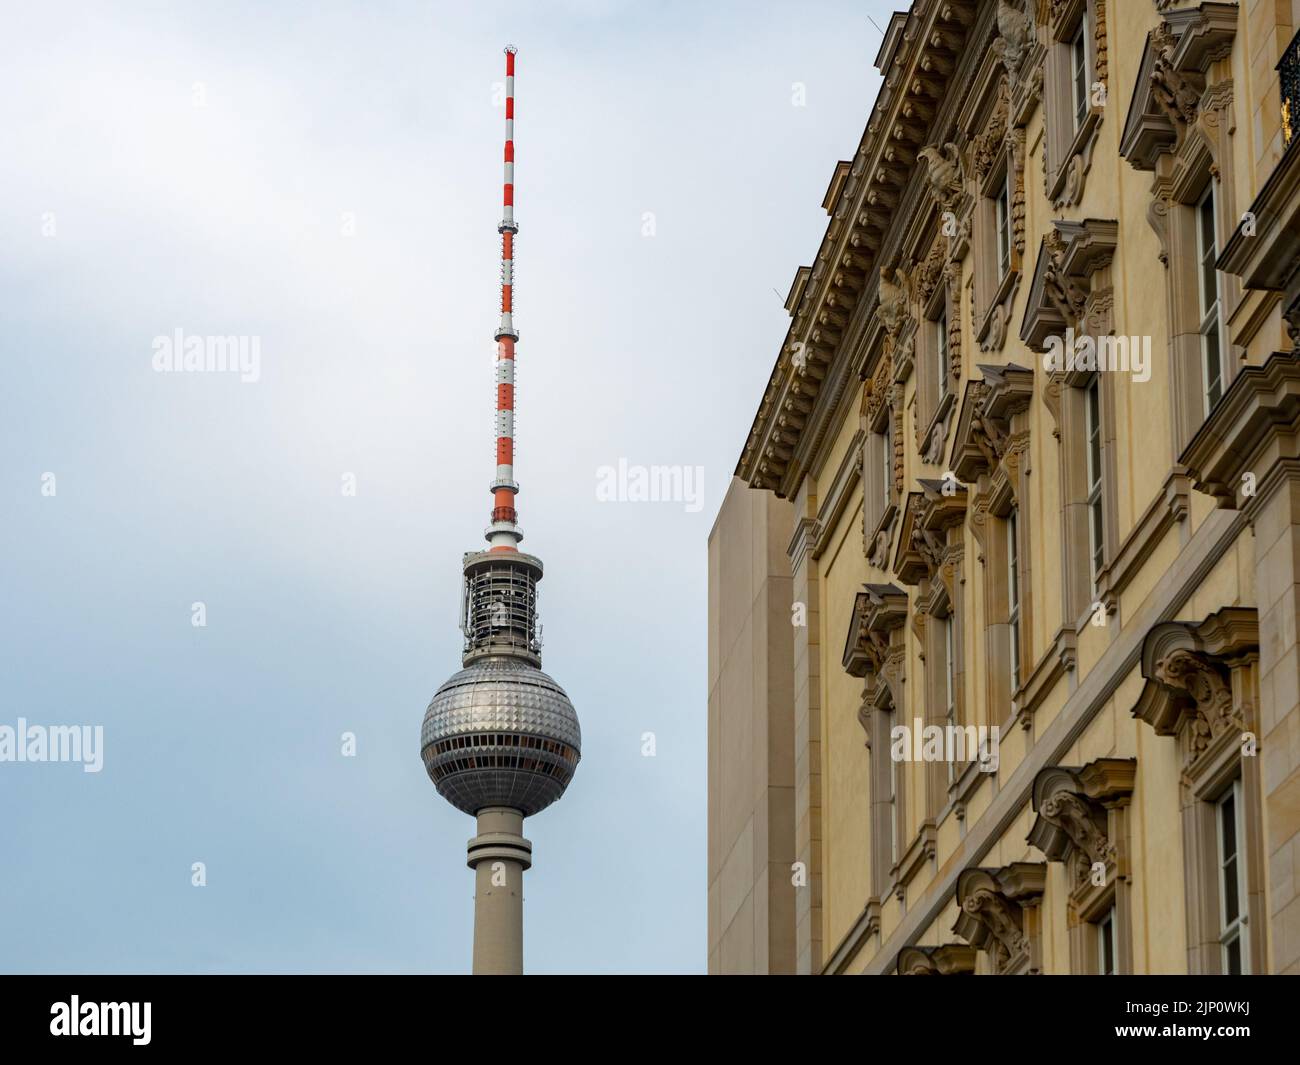 Berliner Fernsehturm neben einem alten Gebäude. Das berühmte Wahrzeichen der Hauptstadt Deutschlands. Außenansicht eines Reiseziels und einer Sehenswürdigkeit. Stockfoto